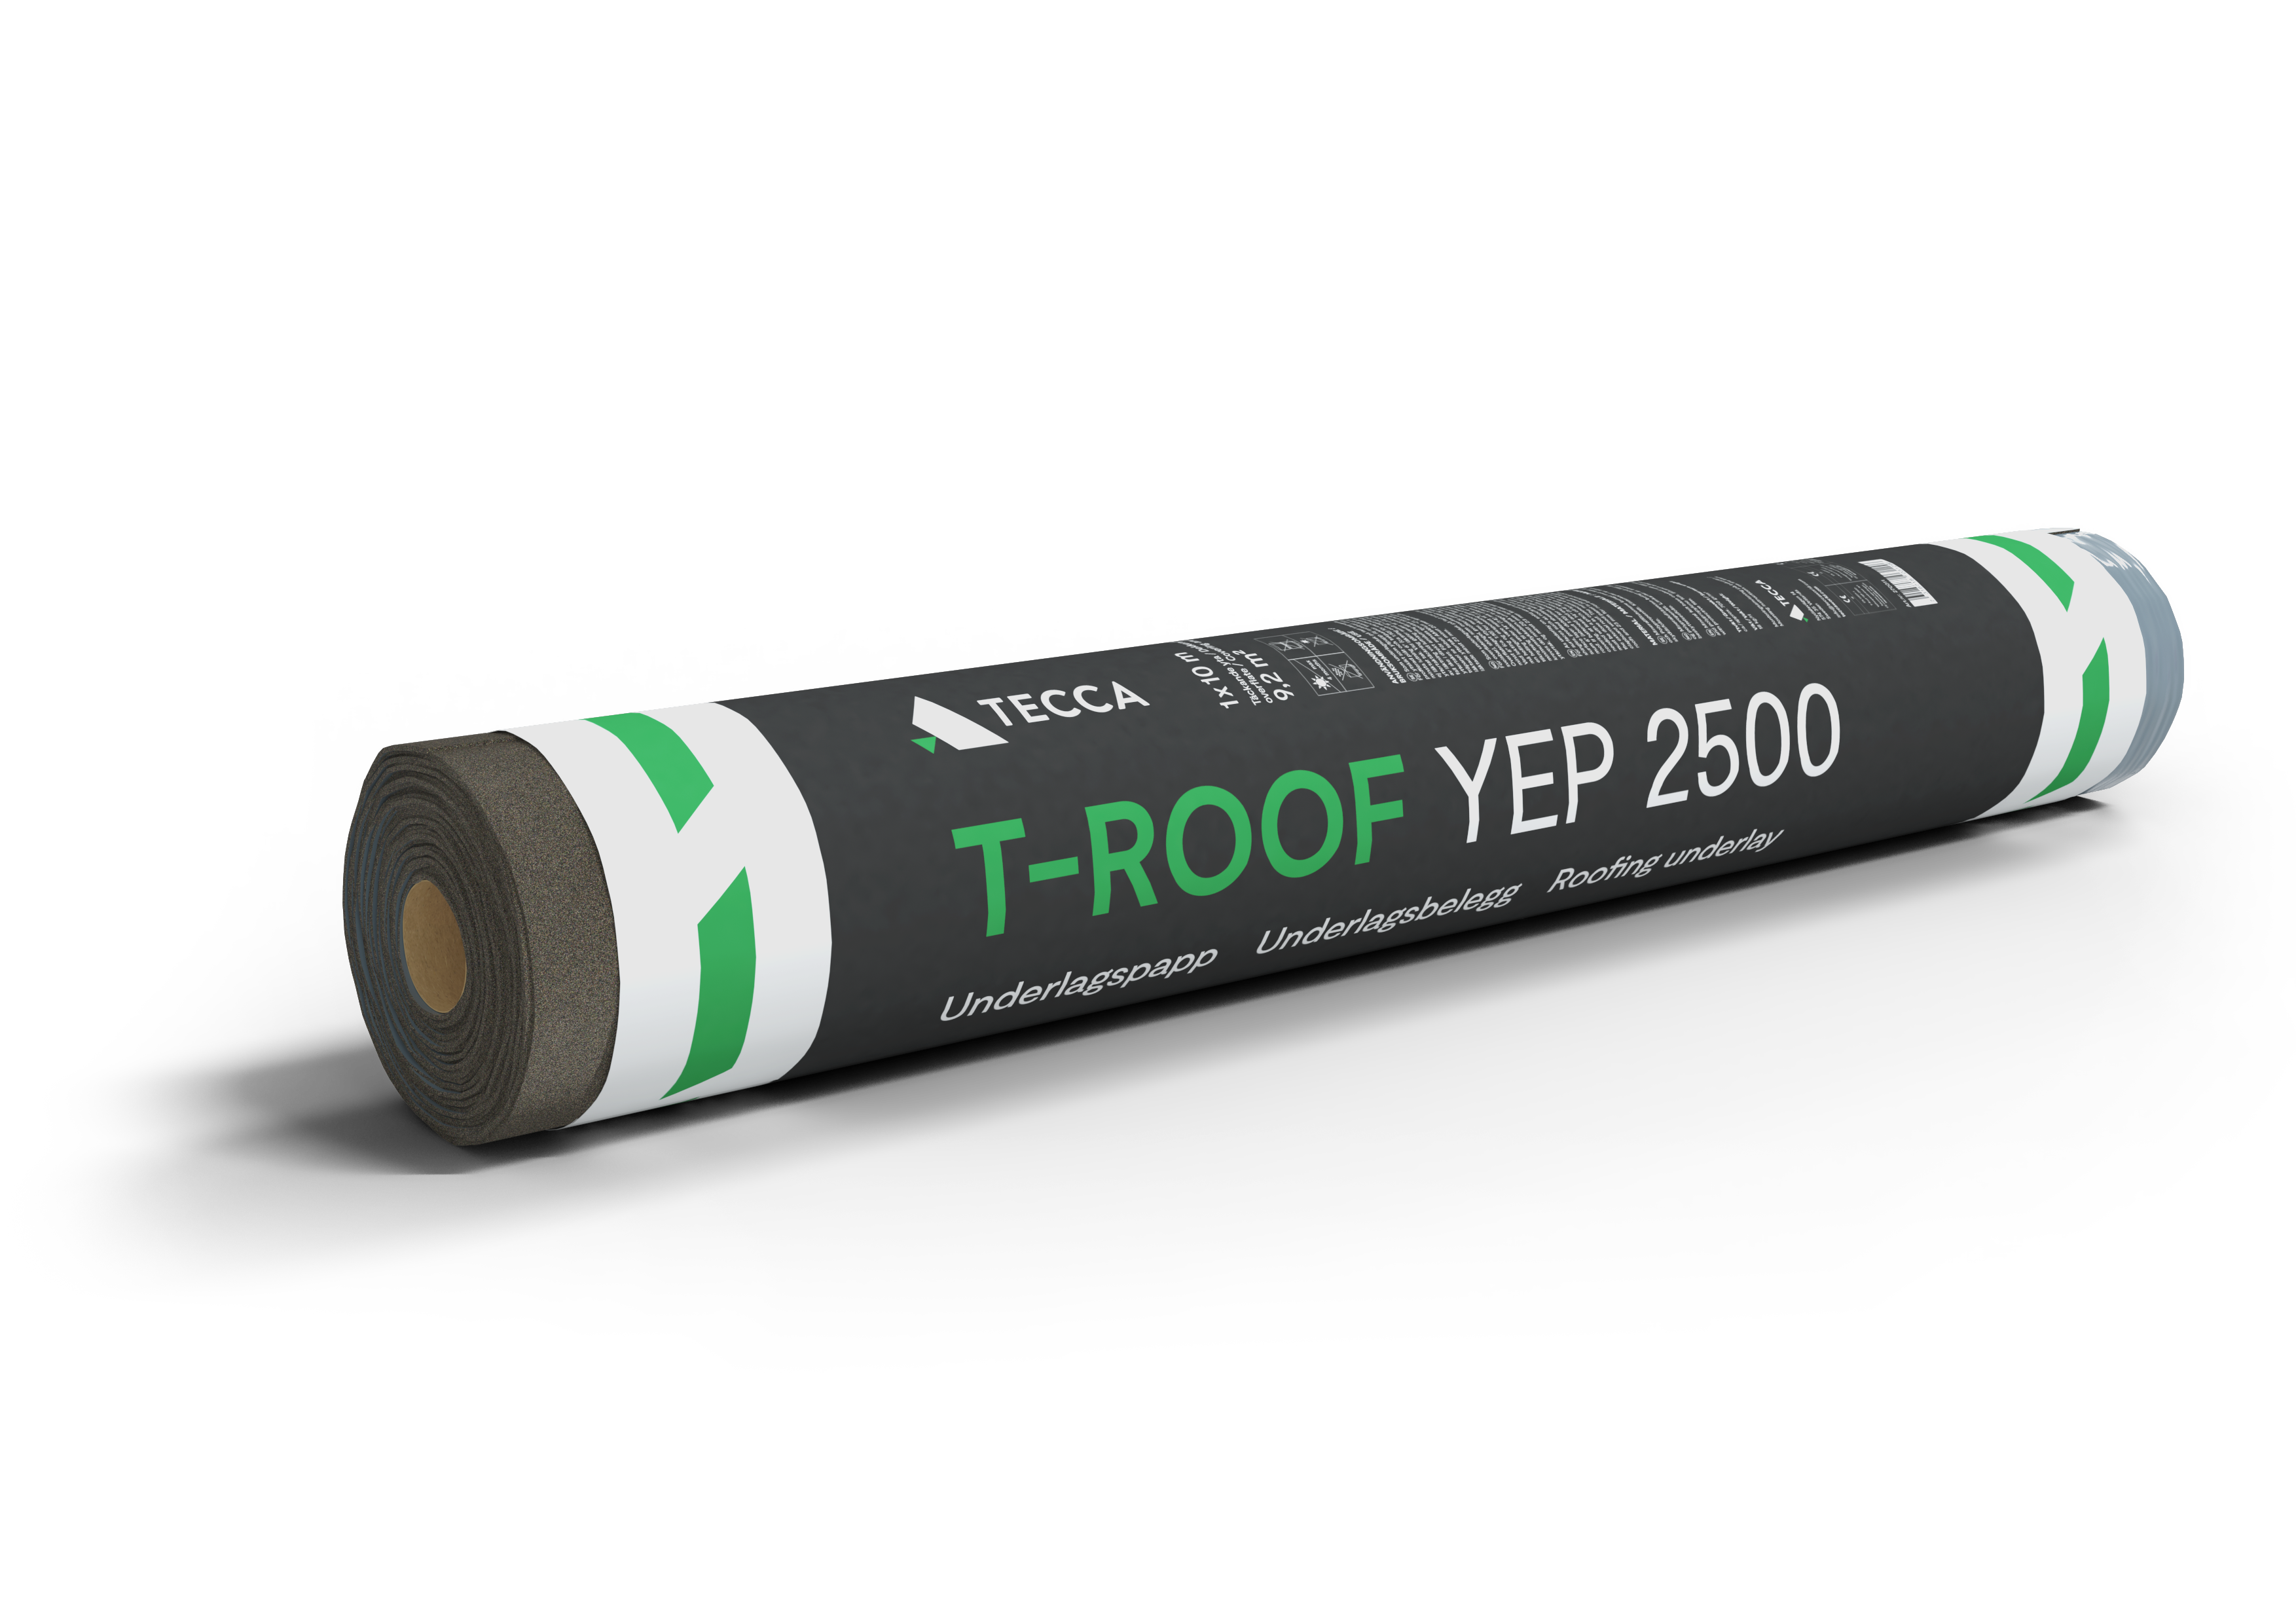 T-Roof YEP 2500